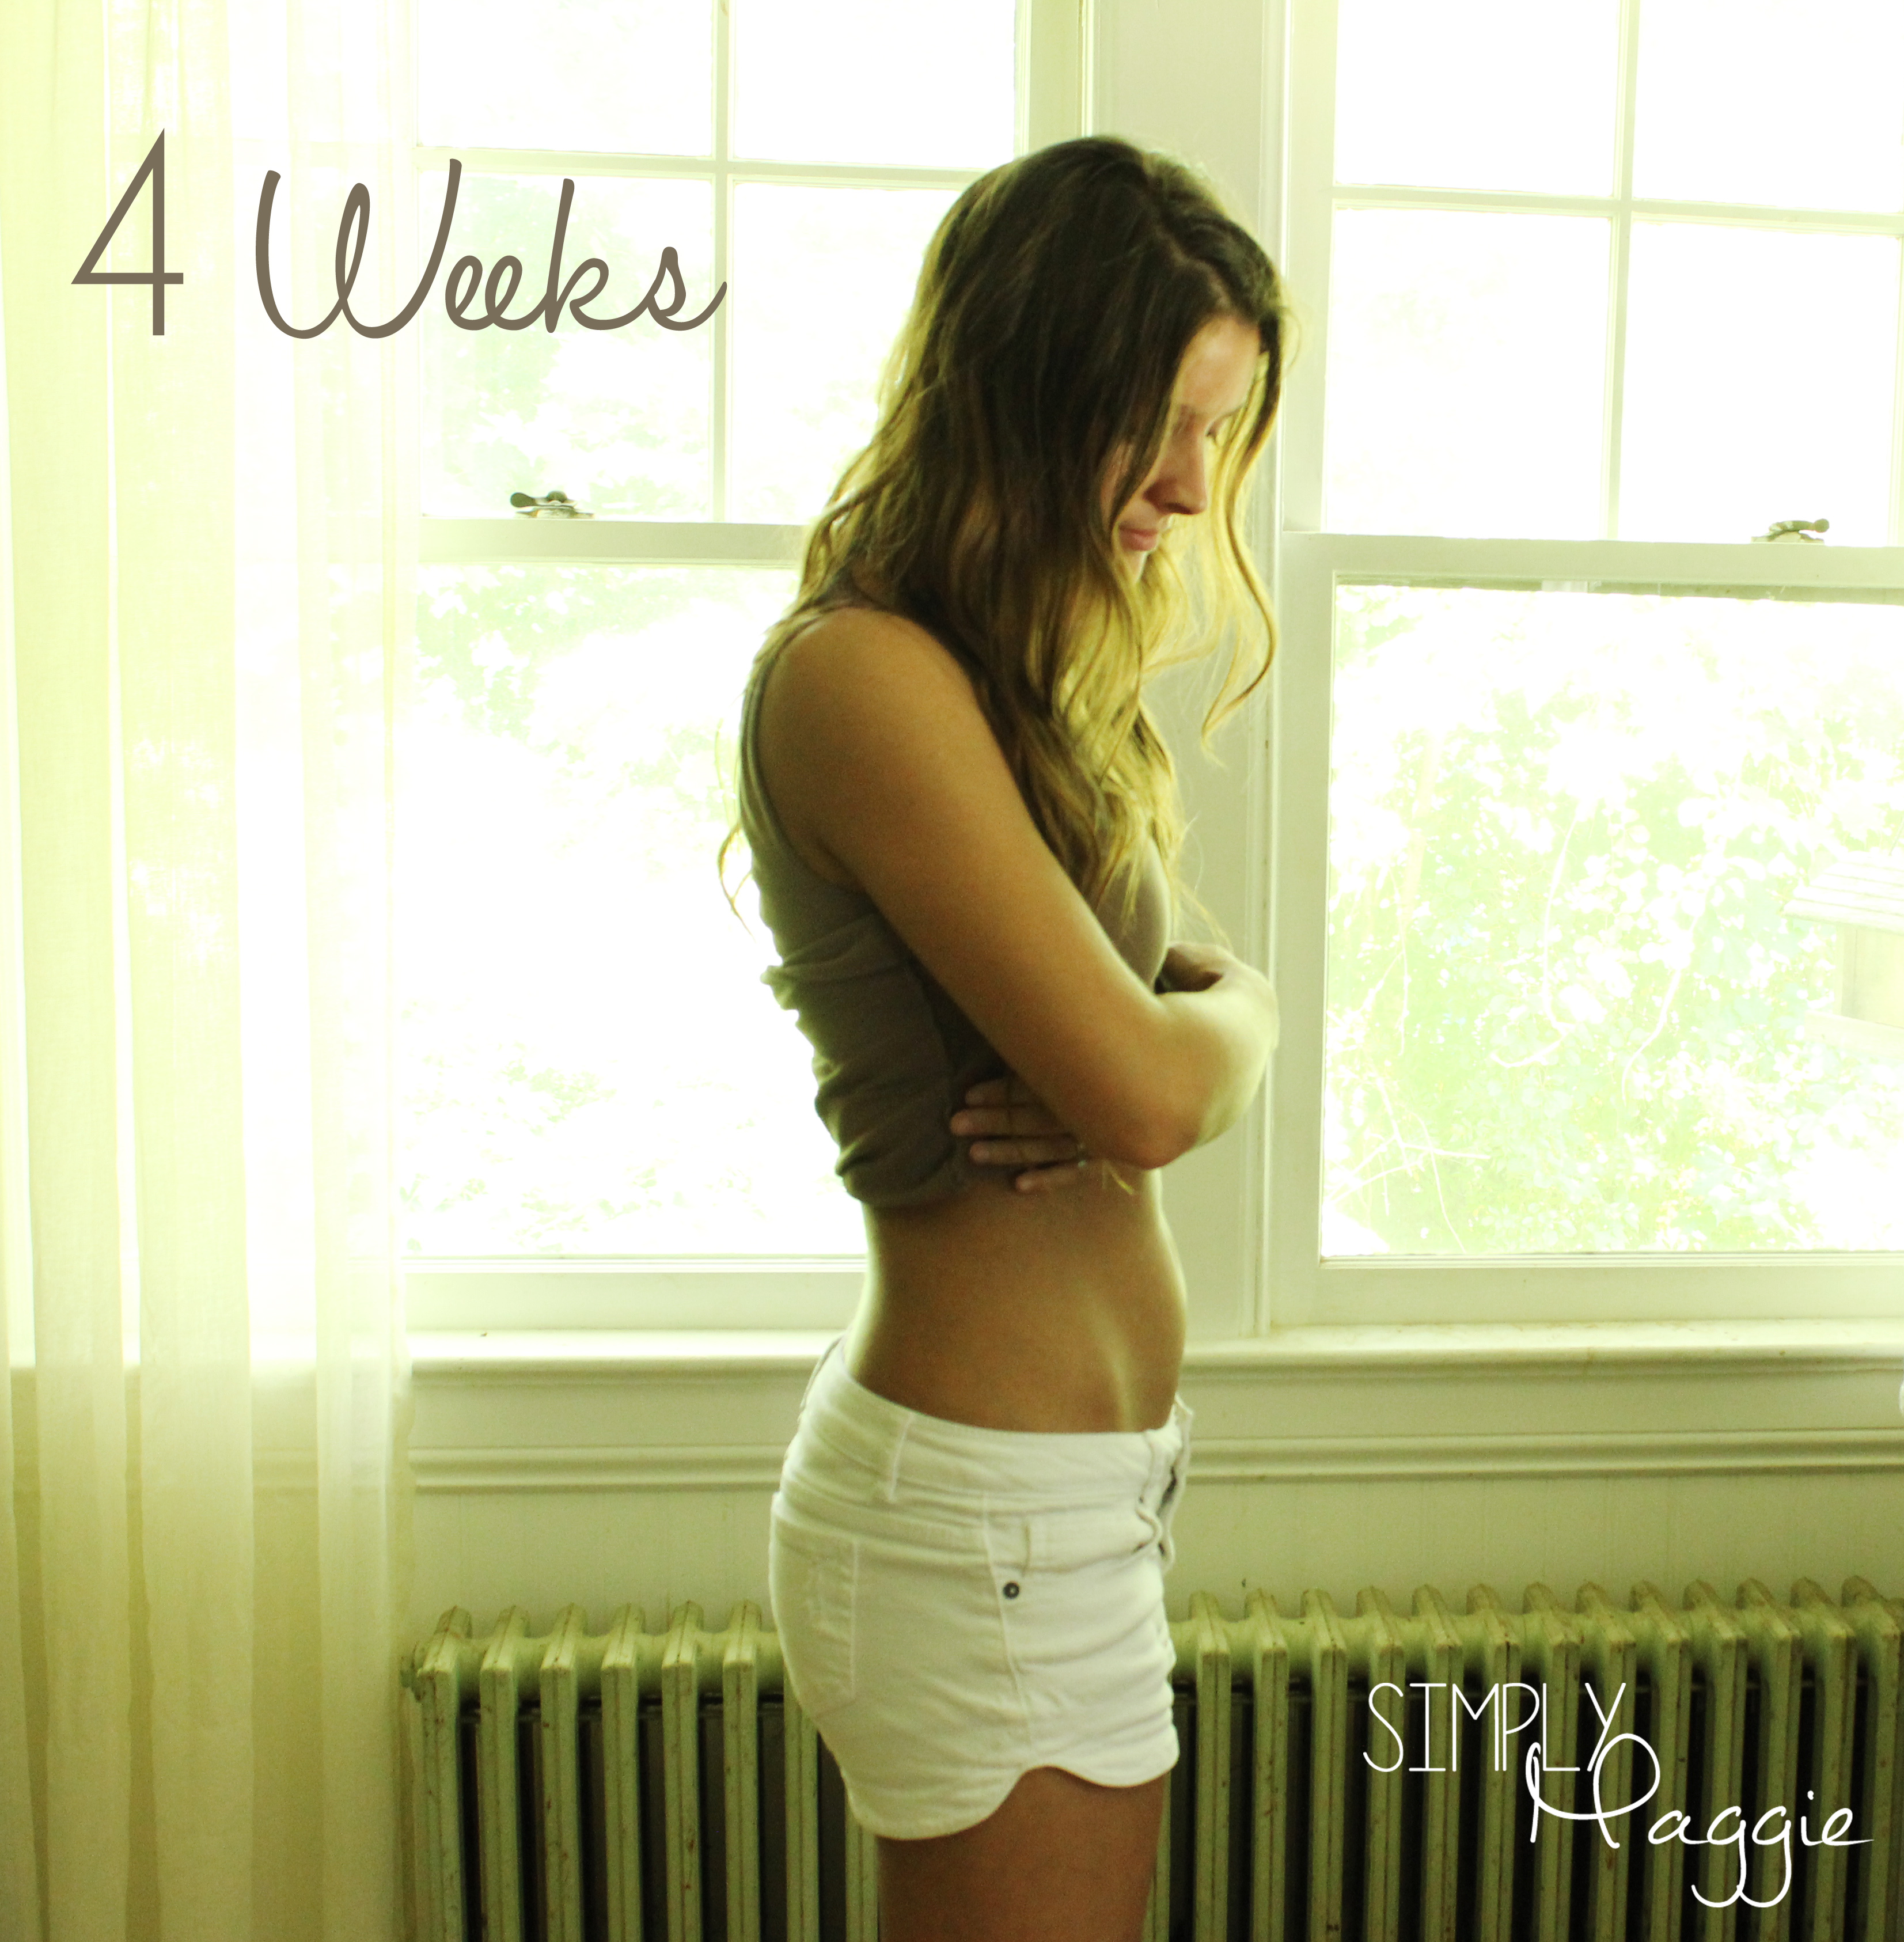 I Am Seven Weeks Pregnant 50